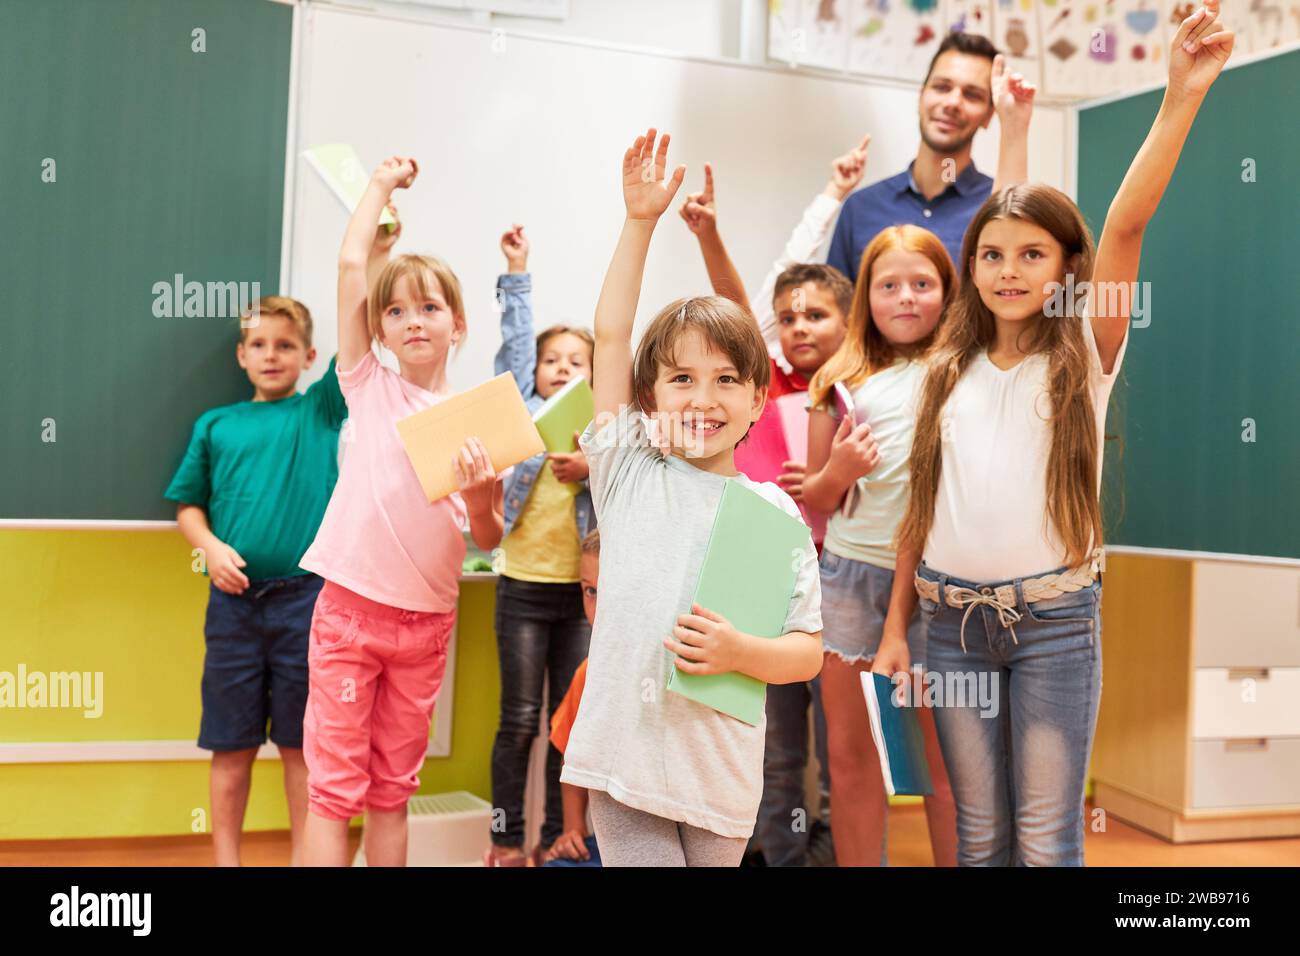 Group of happy school kids raising hands in classroom Stock Photo